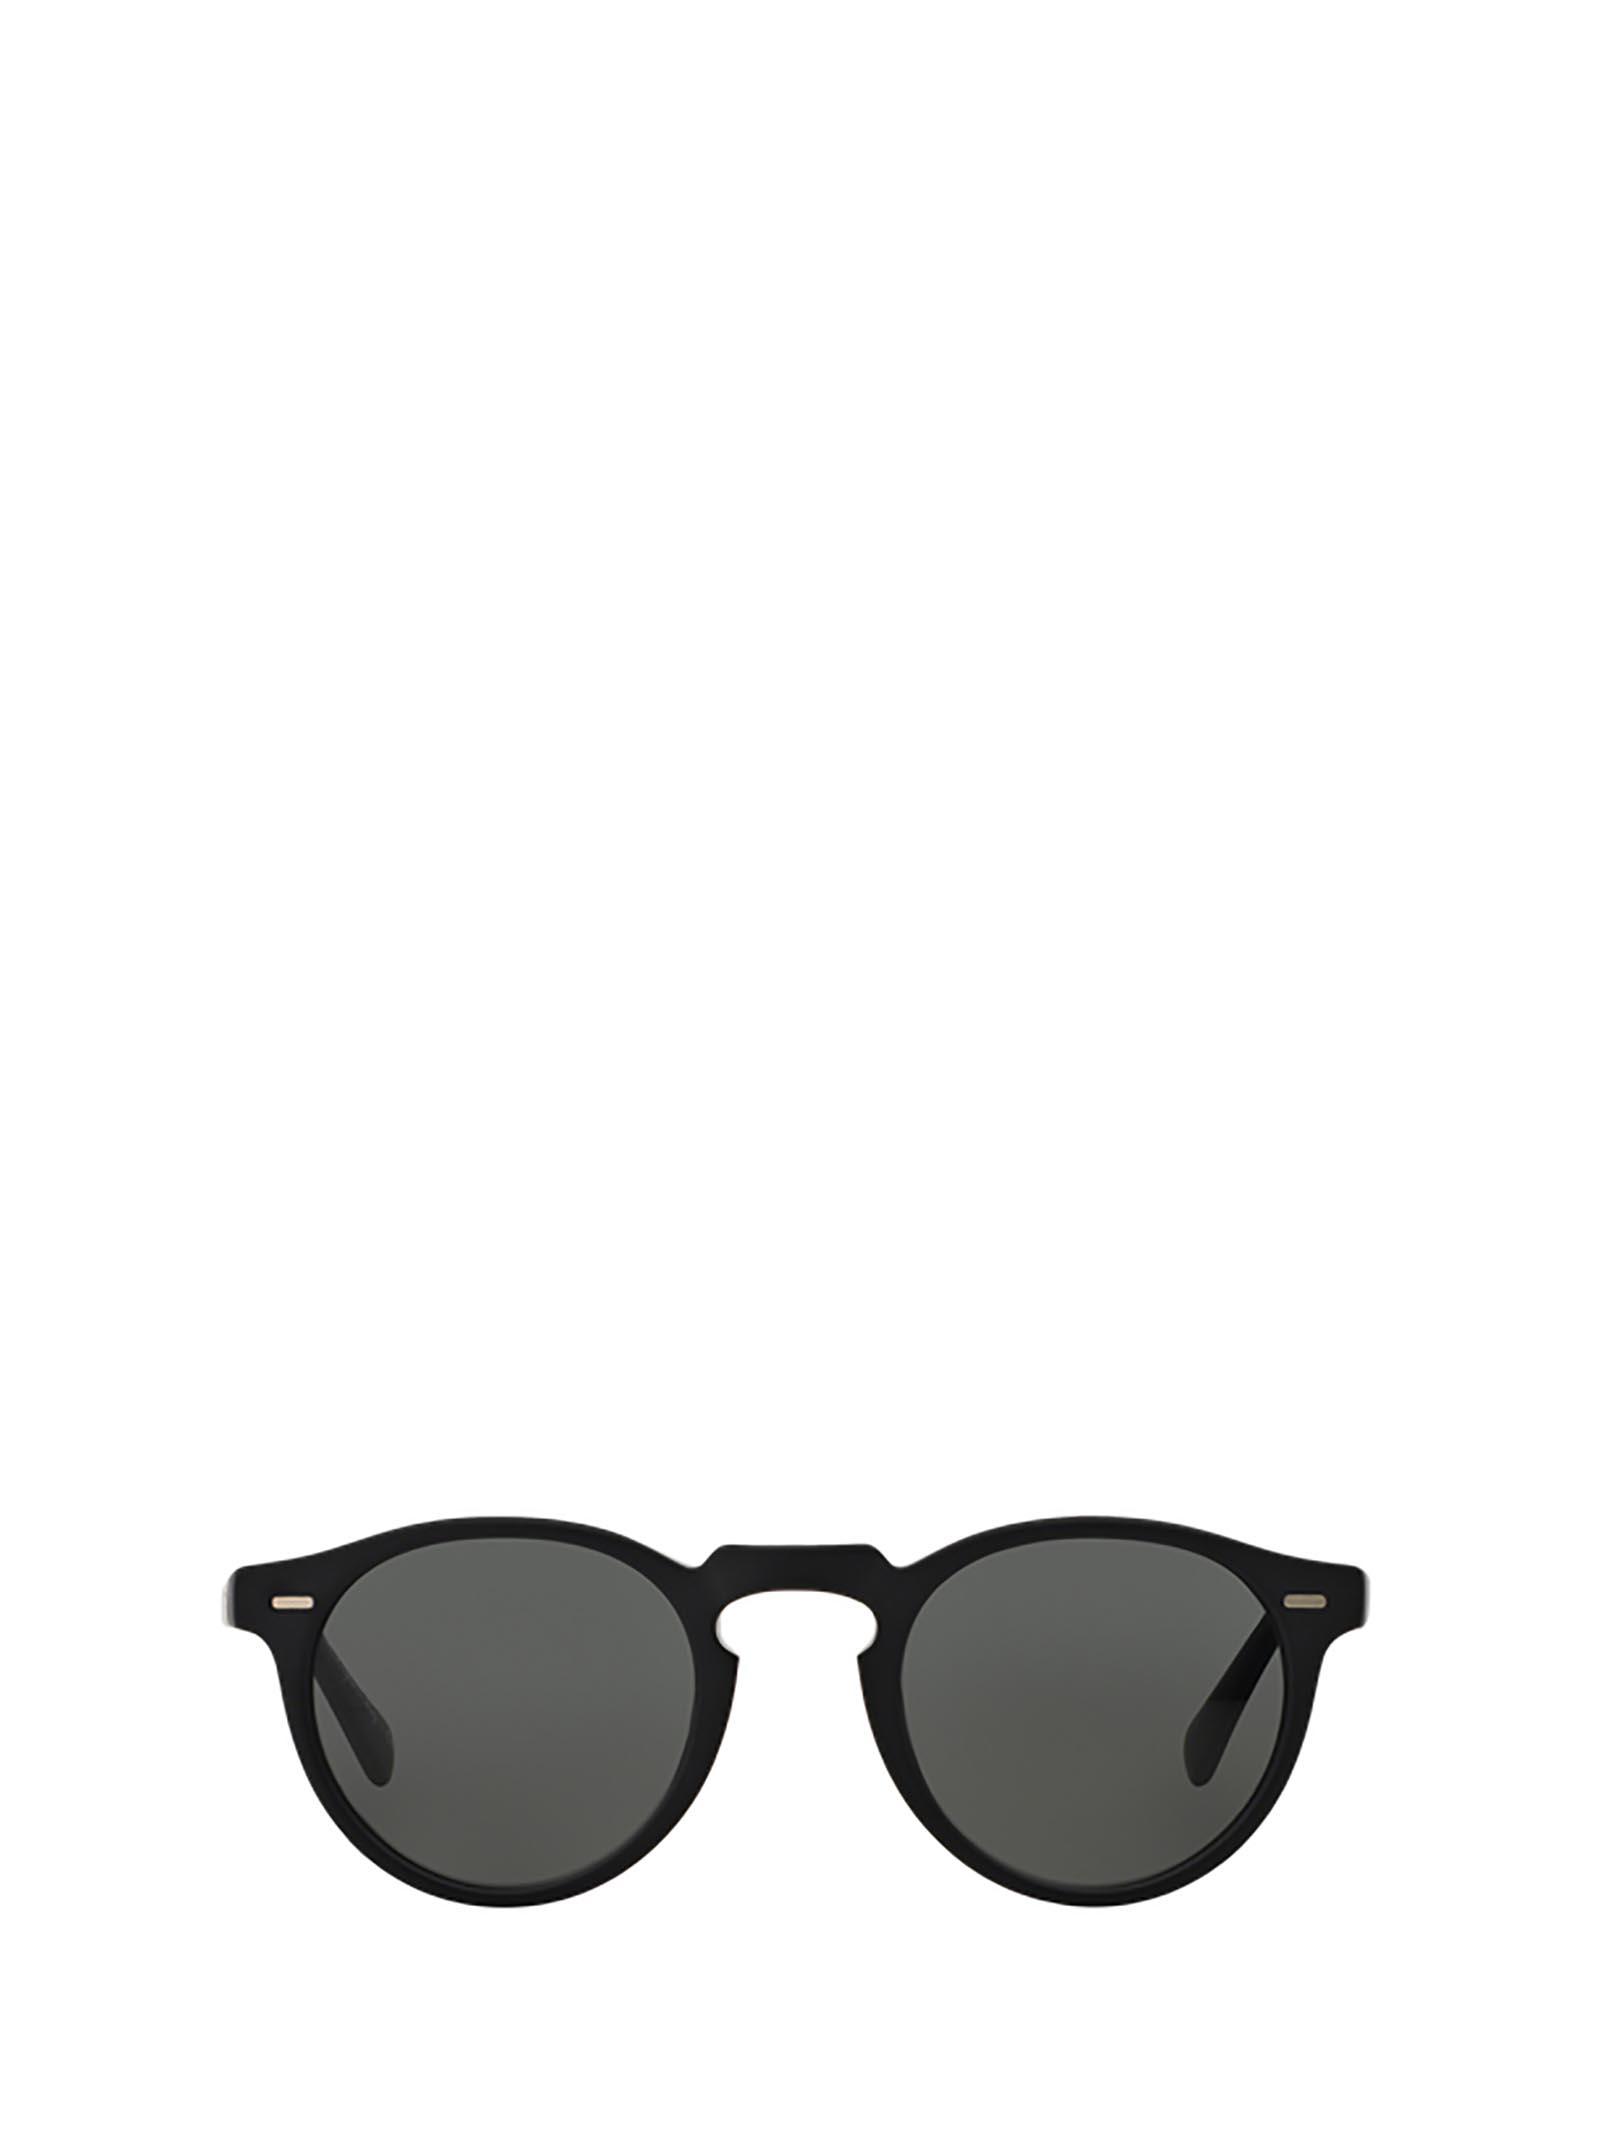 Oliver Peoples Eyeglasses in Black / Antique Pewter - Save 9% Black Womens Sunglasses Oliver Peoples Sunglasses 